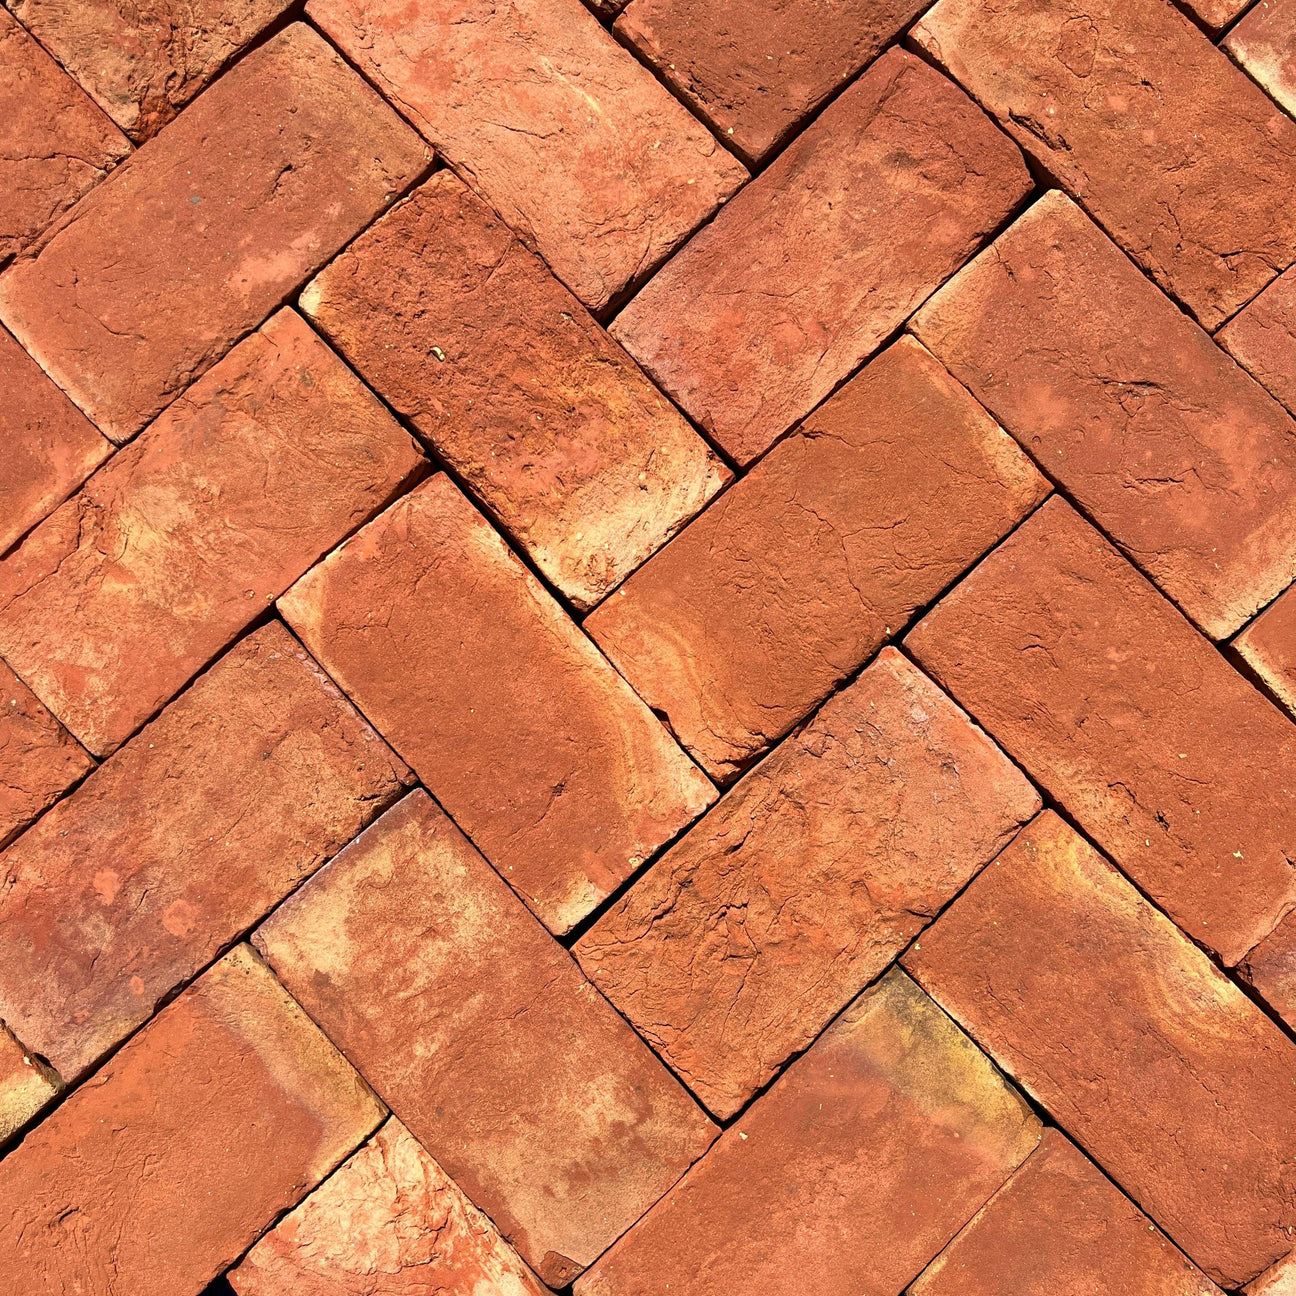 New Paving Bricks - Reclaimed Brick Company